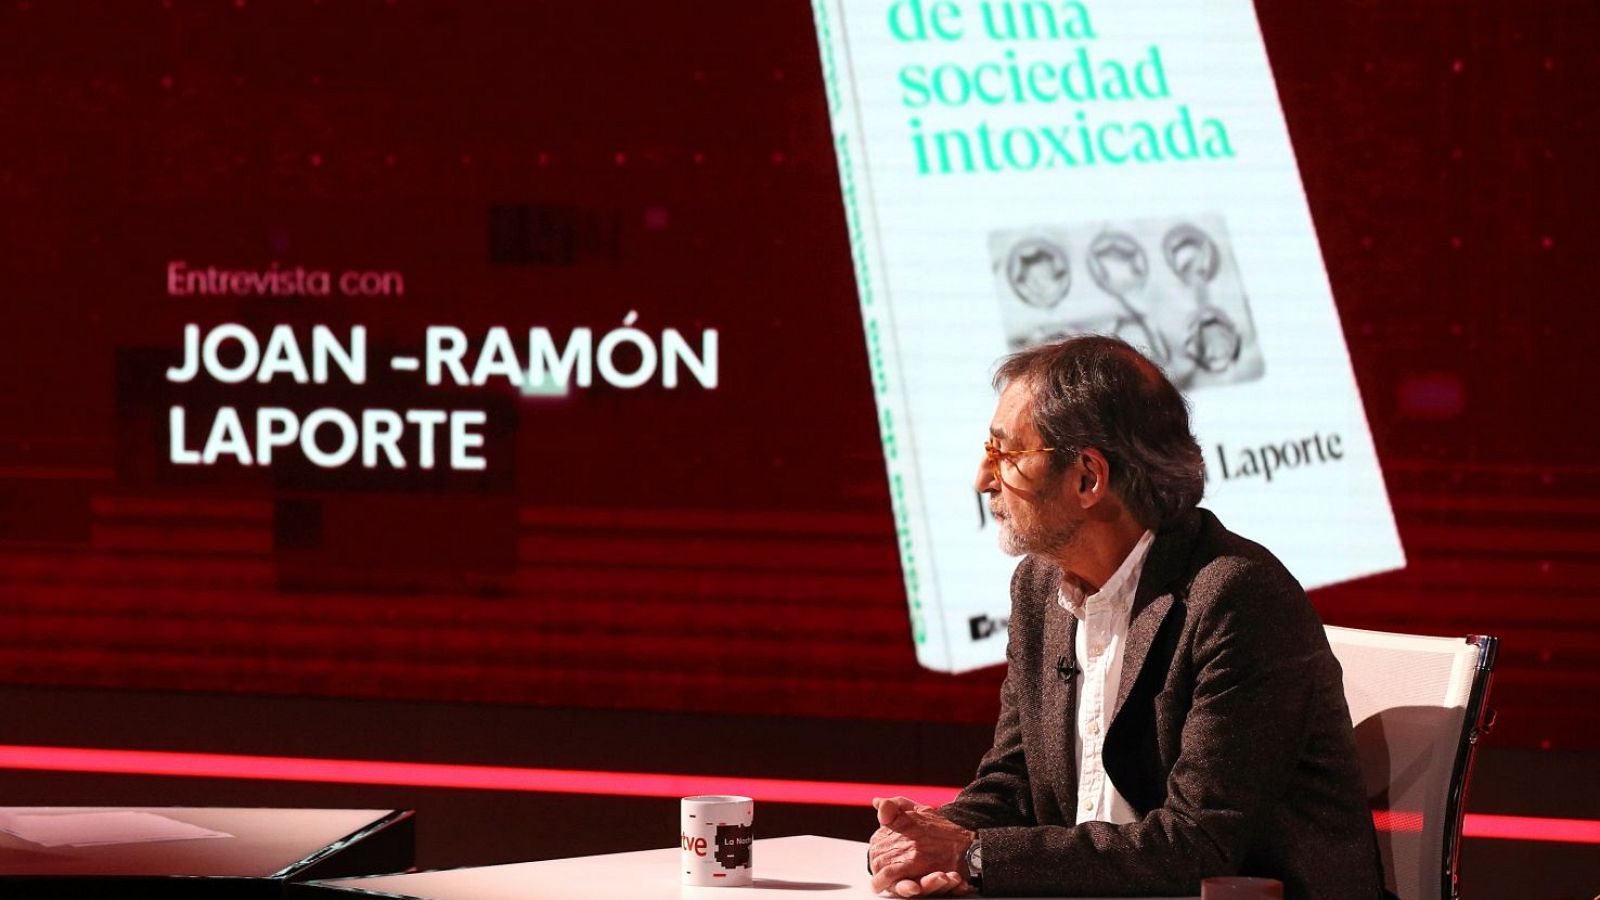 Joan-Ramón Laporte: "El consumo de analgésicos se ha duplicado"